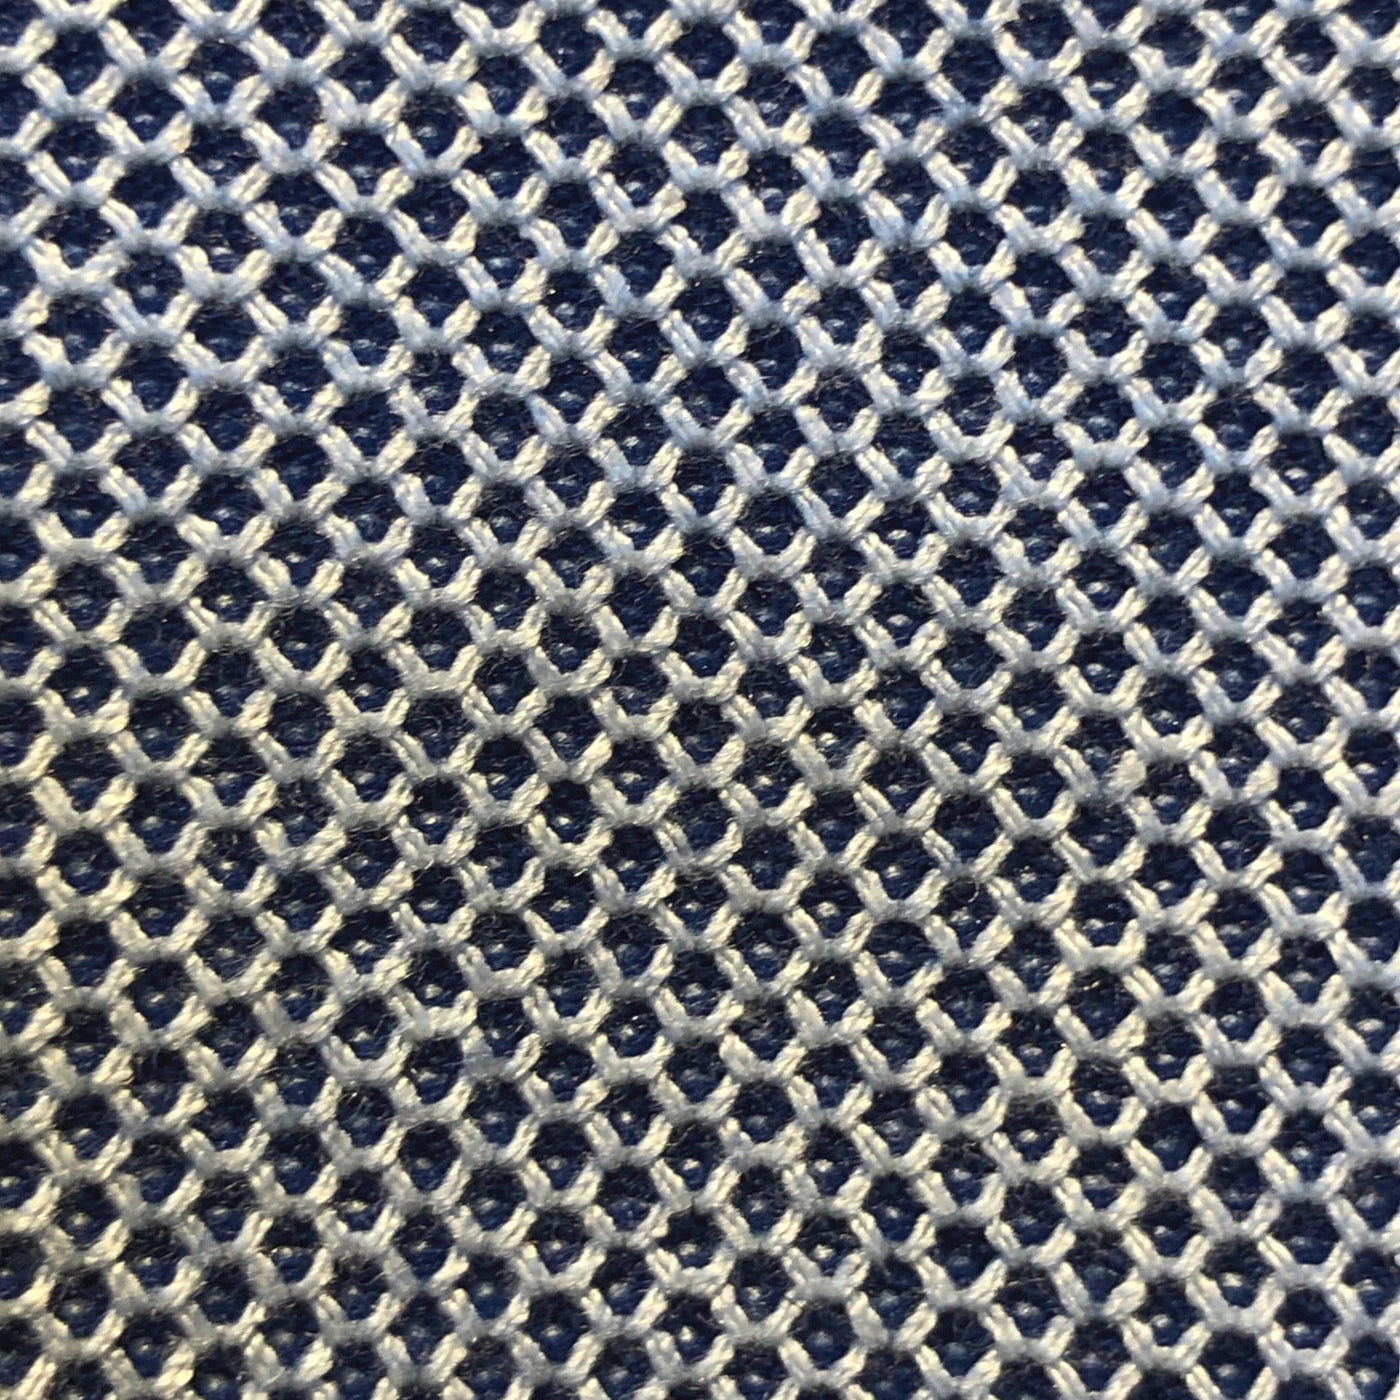 Gotstyle Fashion - Blue Industry Blazers Honeycomb Knit Patch Pocket Jersey Blazer - Navy